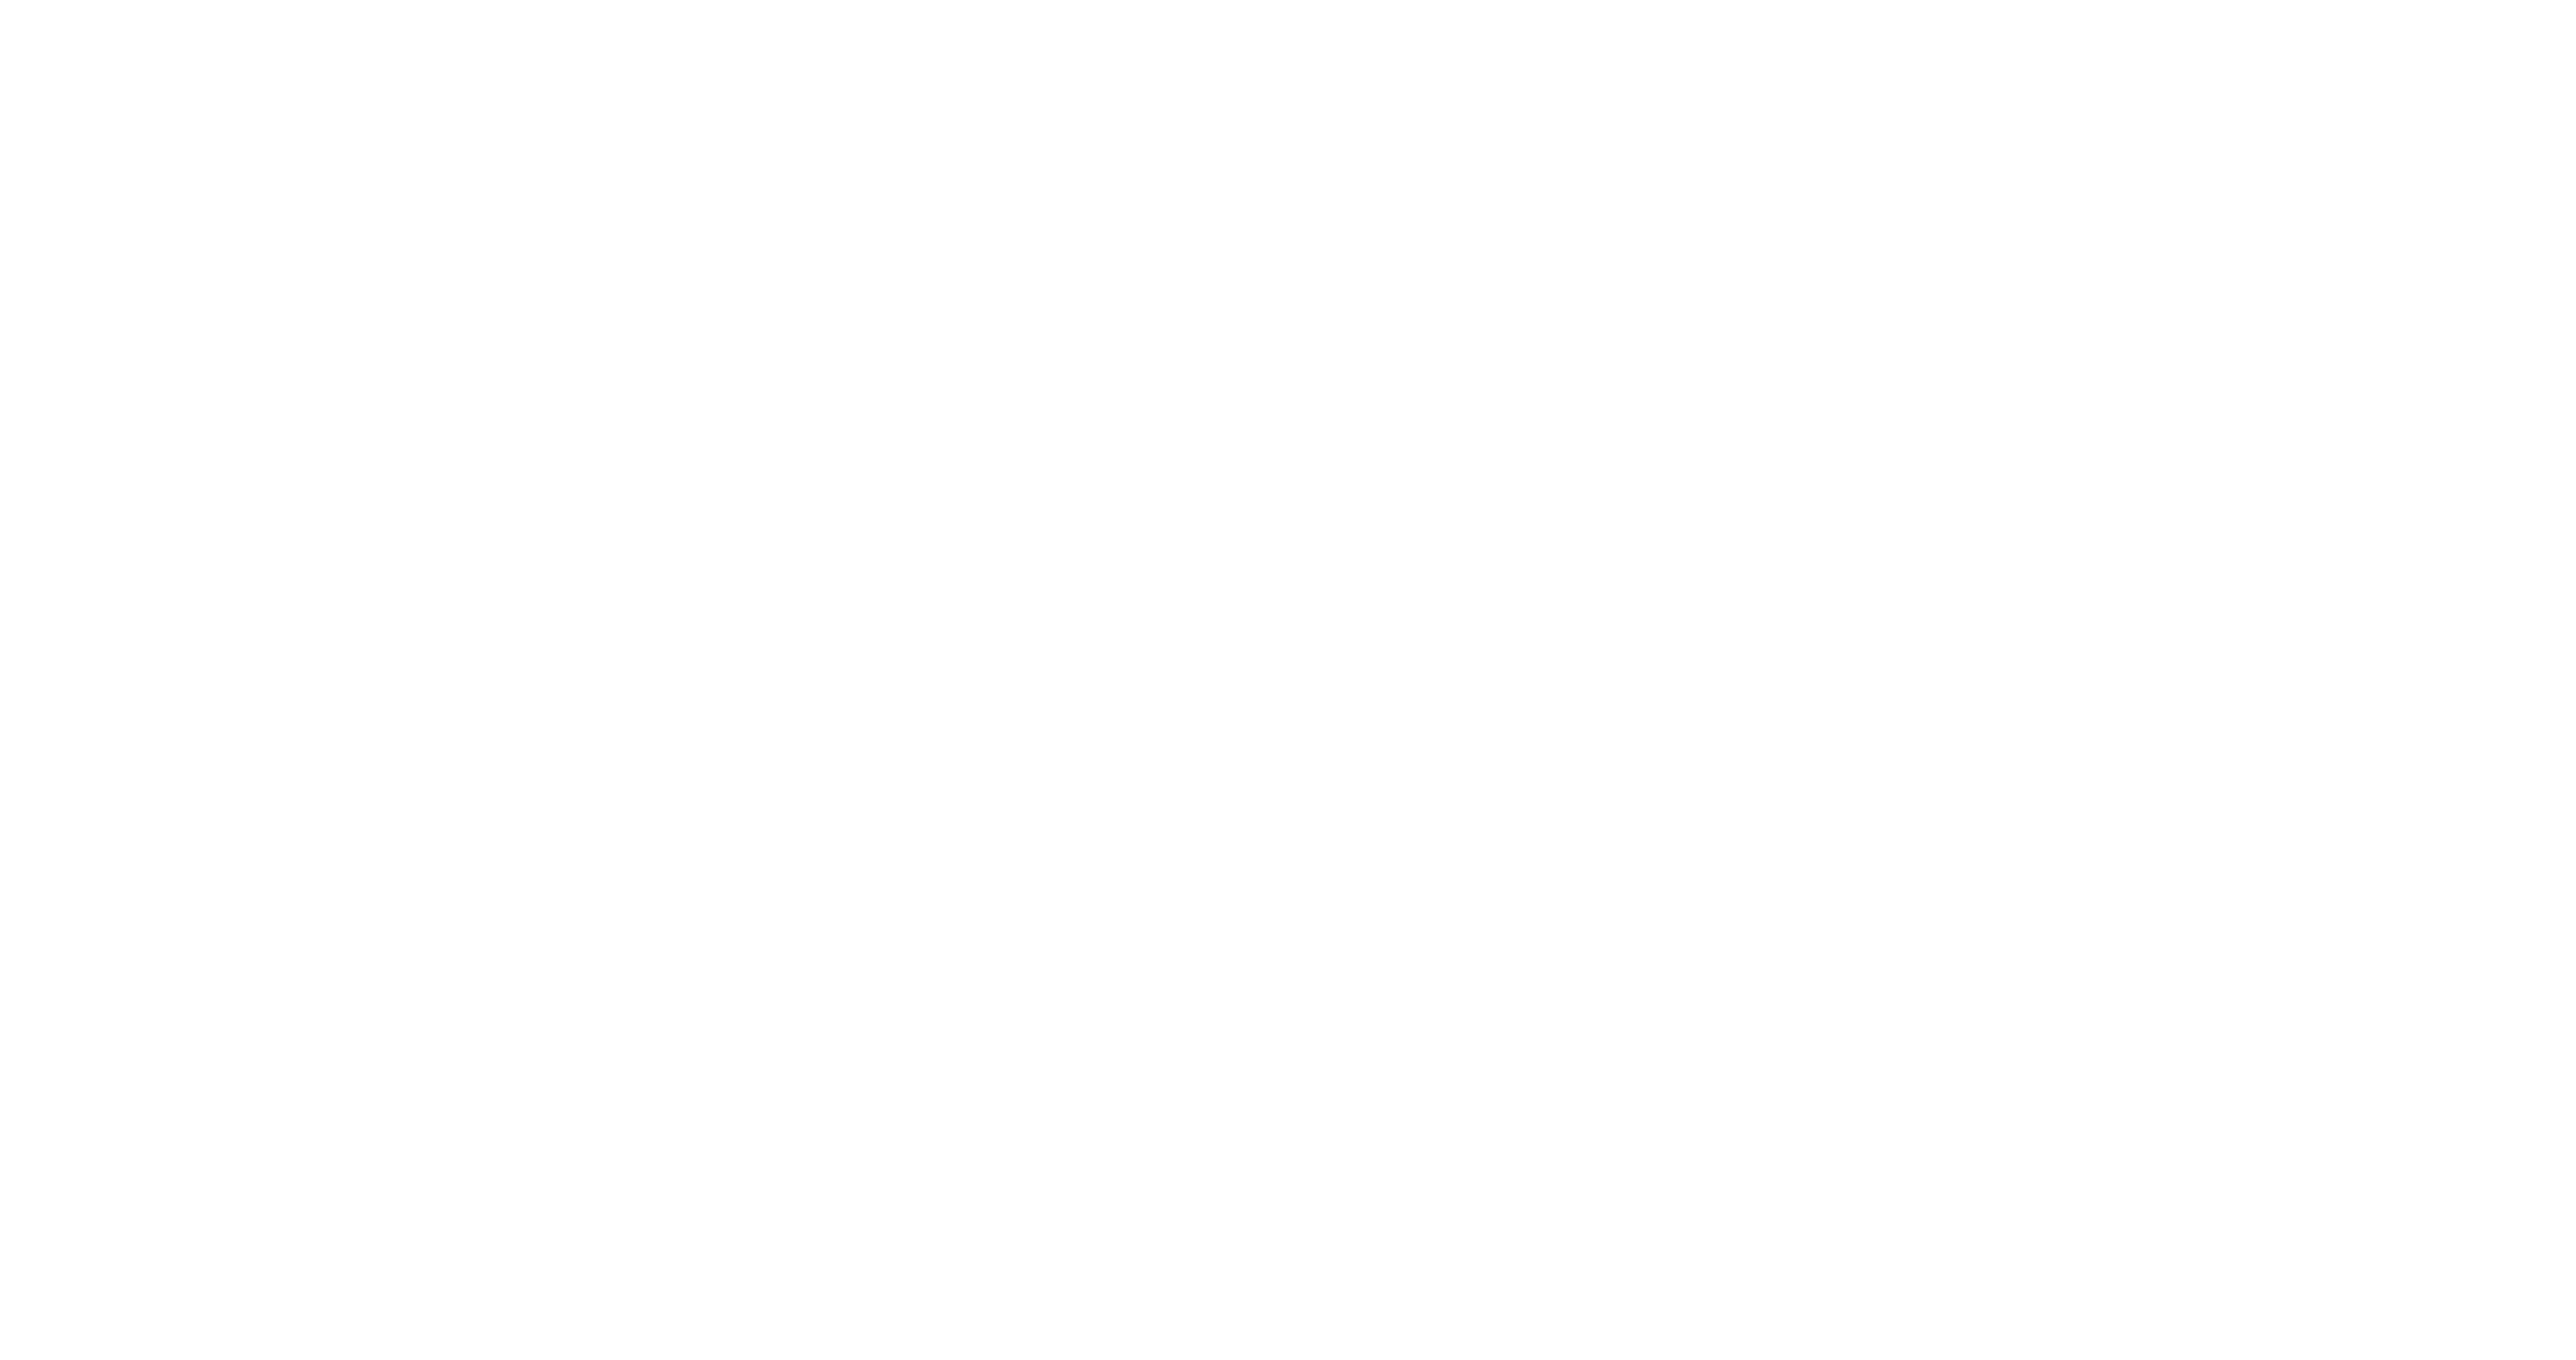 Built Design Awards 2022